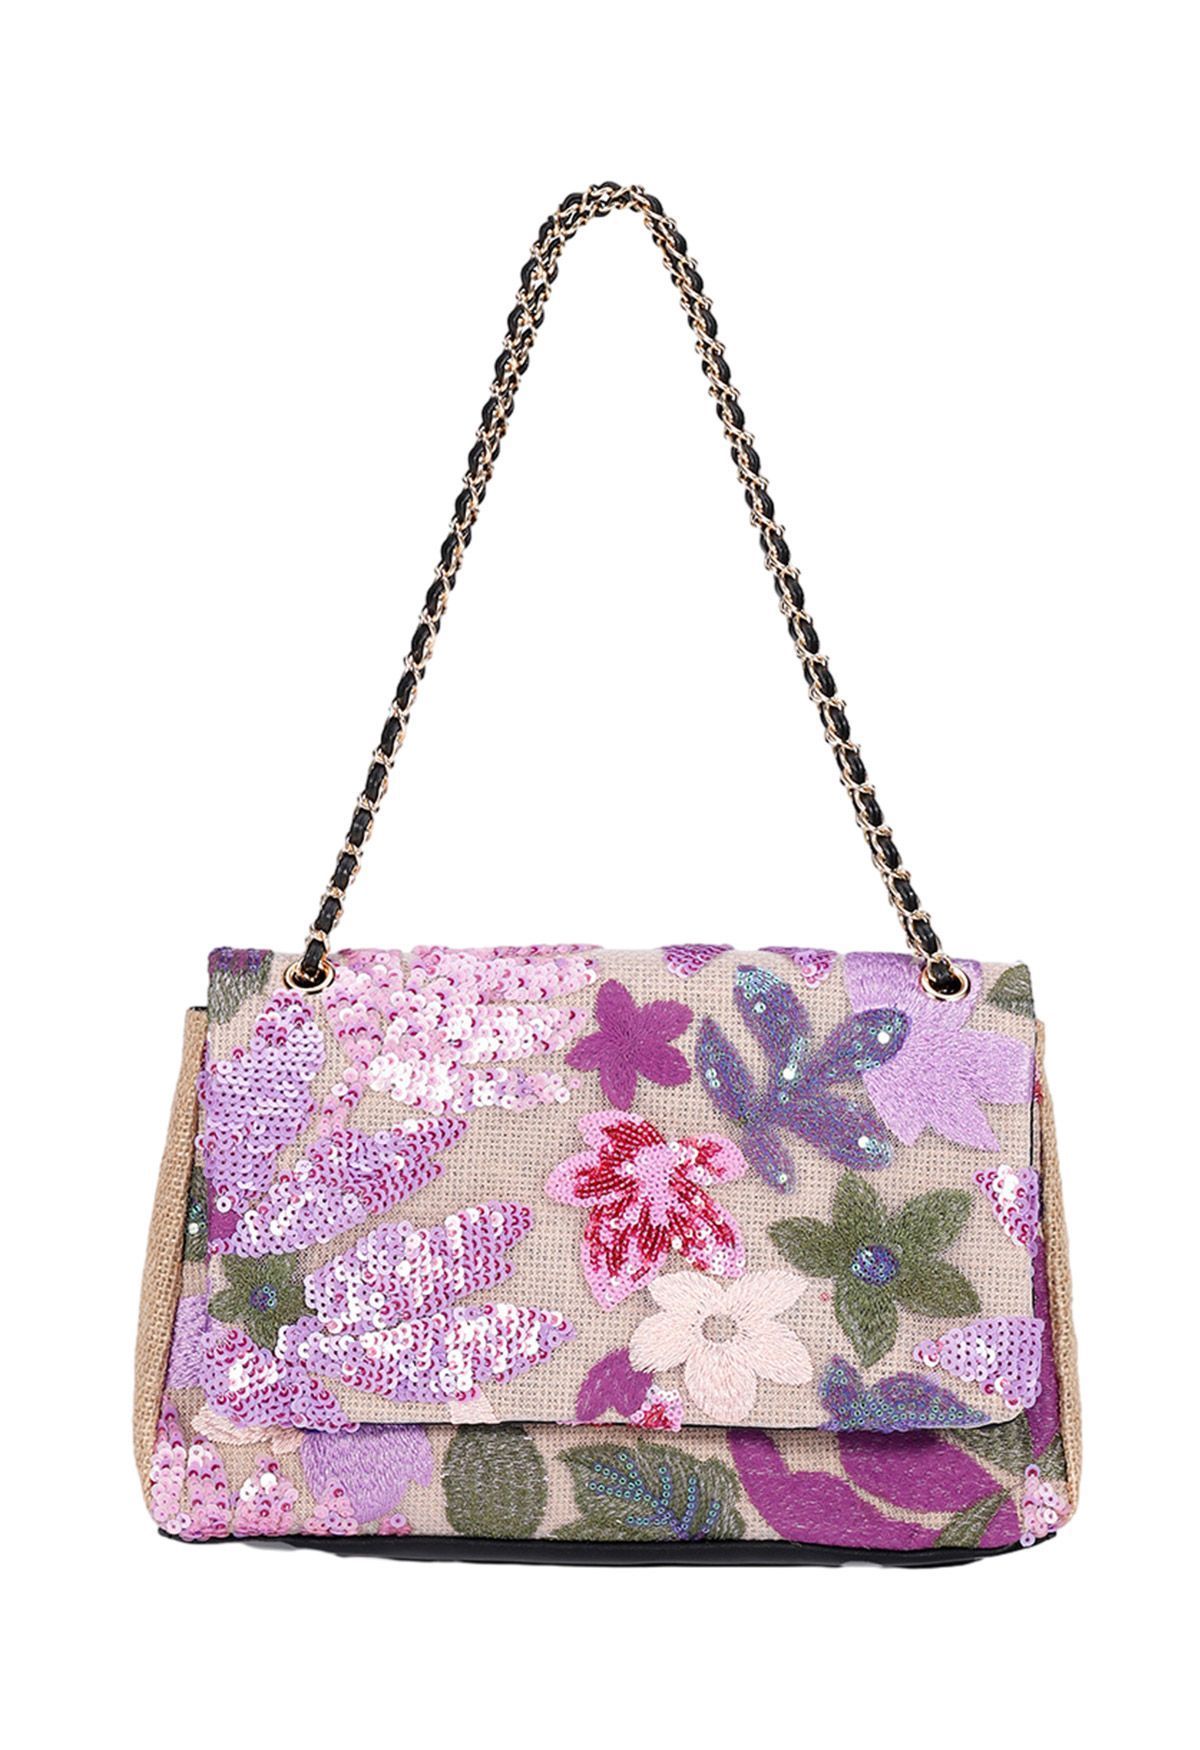 Sequin Floral Embroidered Shoulder Bag in Violet | Chicwish